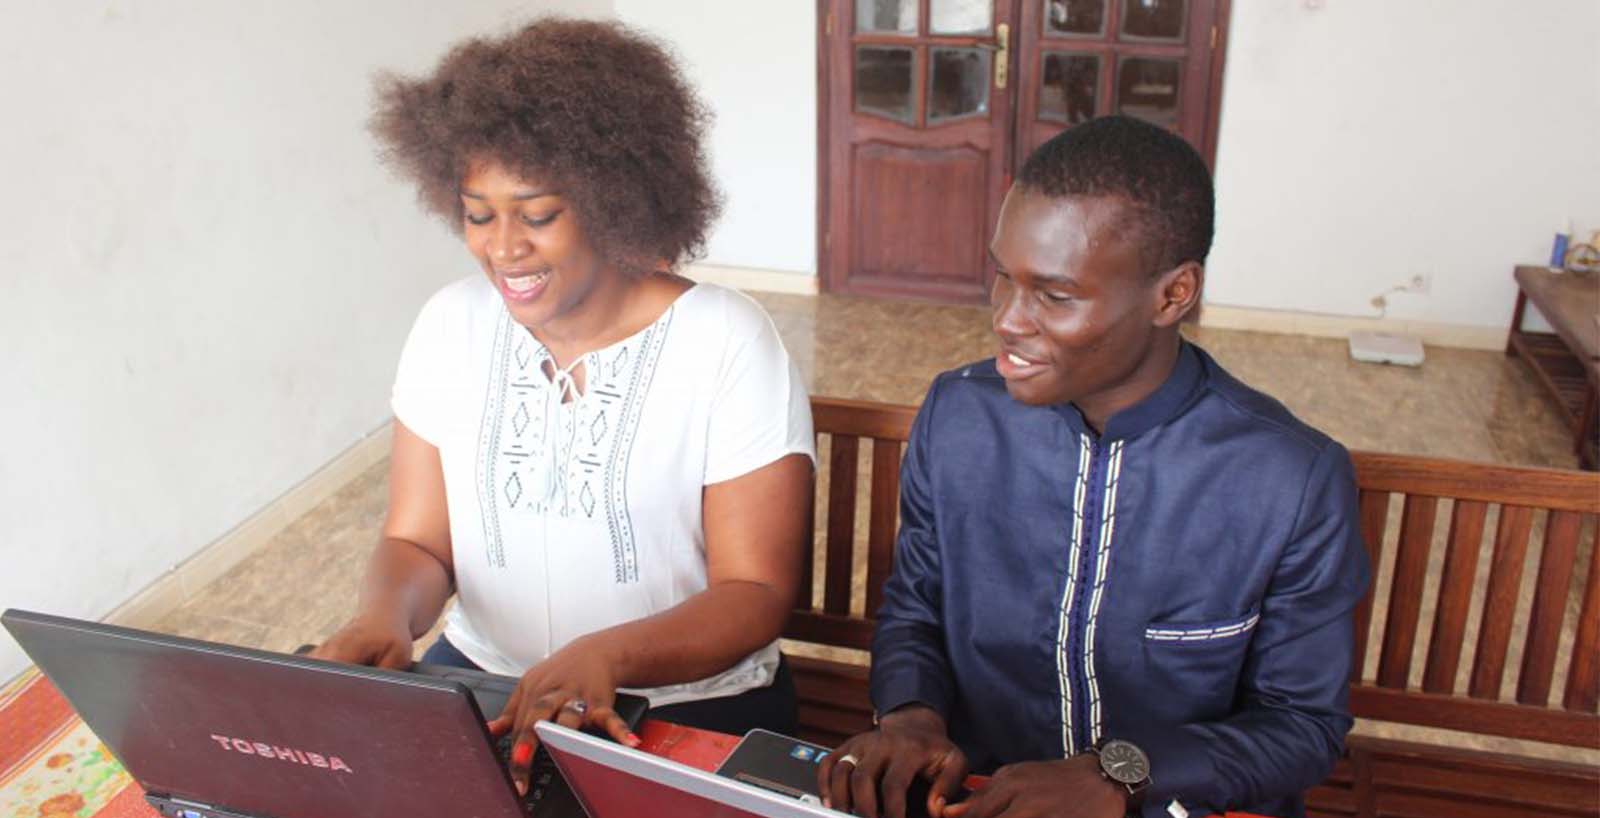 Writing to Ashinaga San – Ashinaga Senegal students thanking donors for providing computers